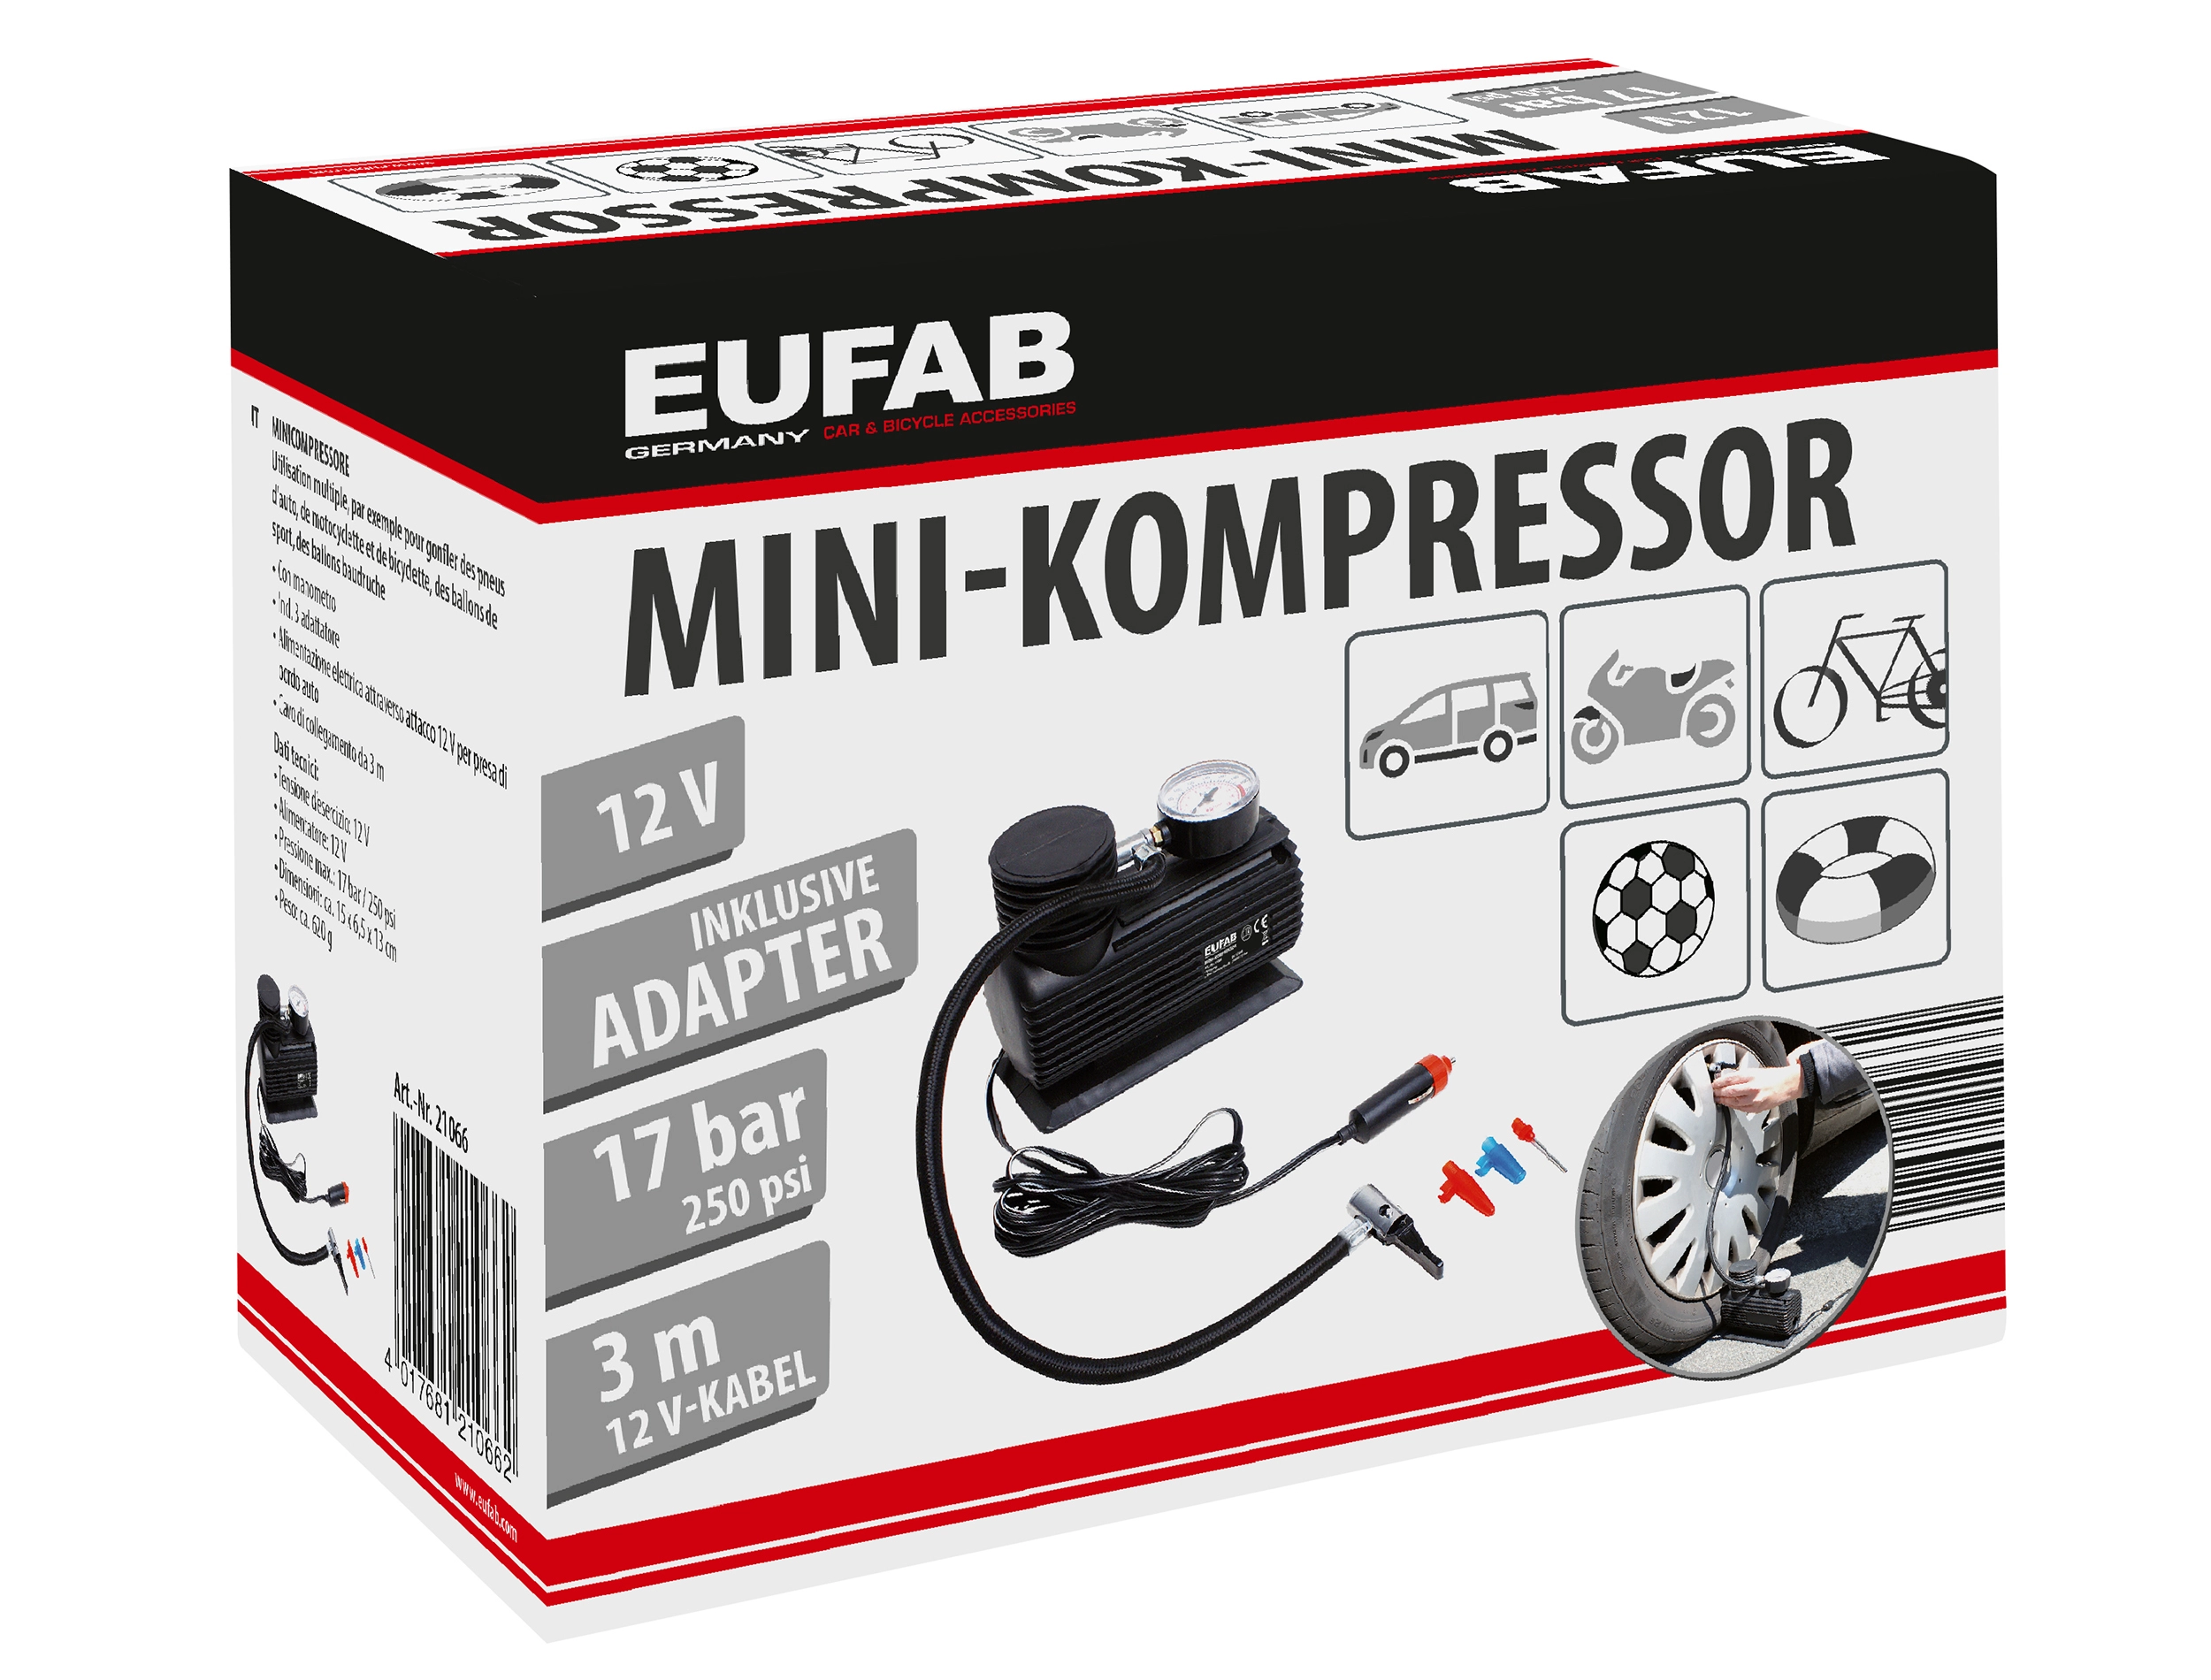 Mini Kompressor 230V – Die 15 besten Produkte im Vergleich